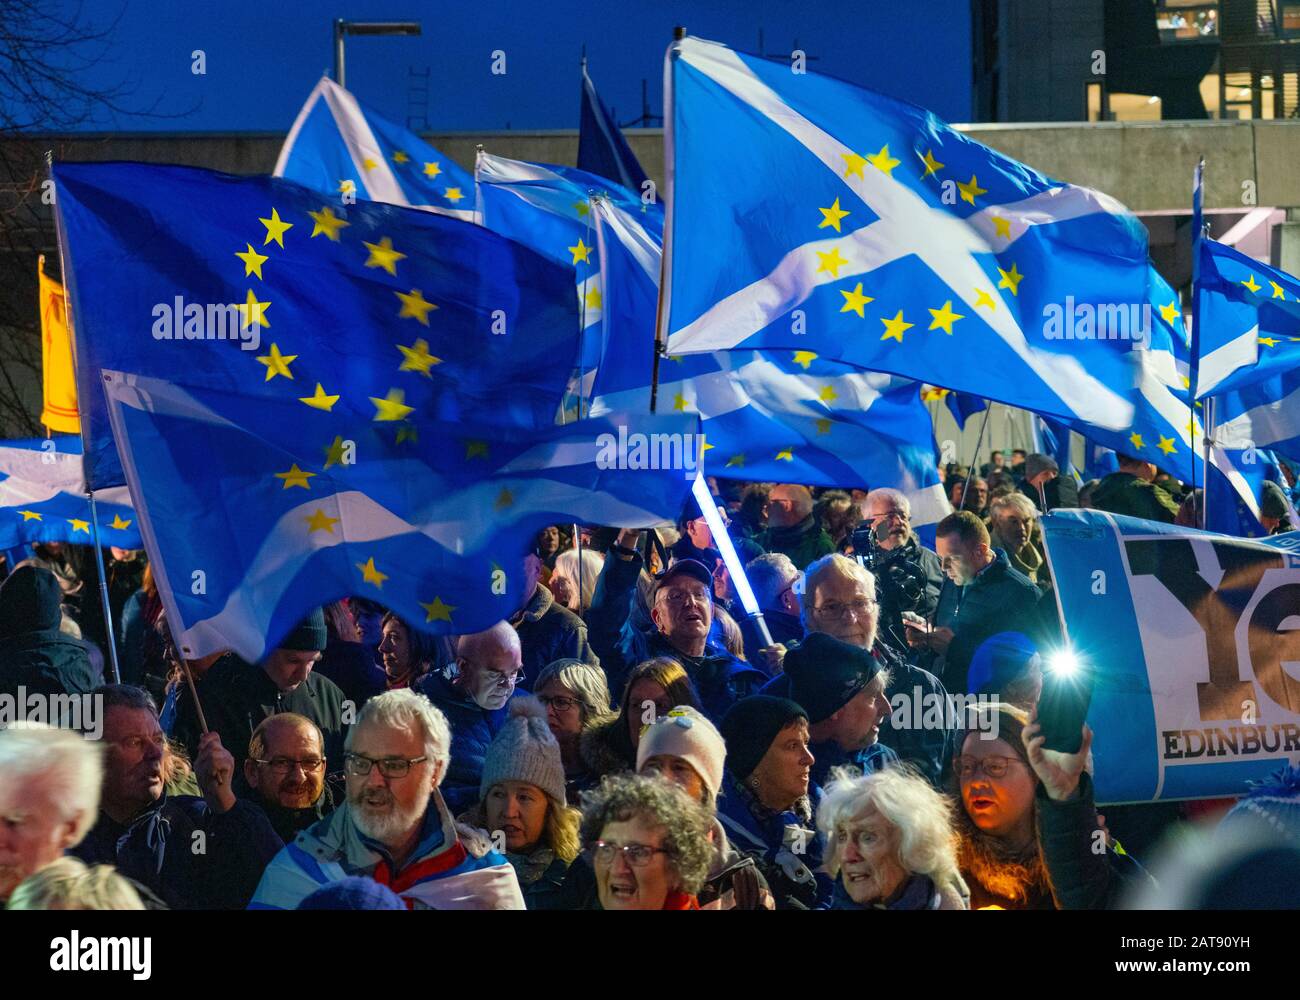 Édimbourg, Écosse, Royaume-Uni. 31 Janvier 2020. Au cours de la nuit du Brexit, des centaines de manifestants anti-Brexit et pro-écossais de l’indépendance se sont réunis au Parlement écossais à Holyrood pour la démo « l’UE manquante Déjà » et pour écouter les discours et manifester leur soutien à l’Union européenne. Iain Masterton/Alay Live News. Banque D'Images